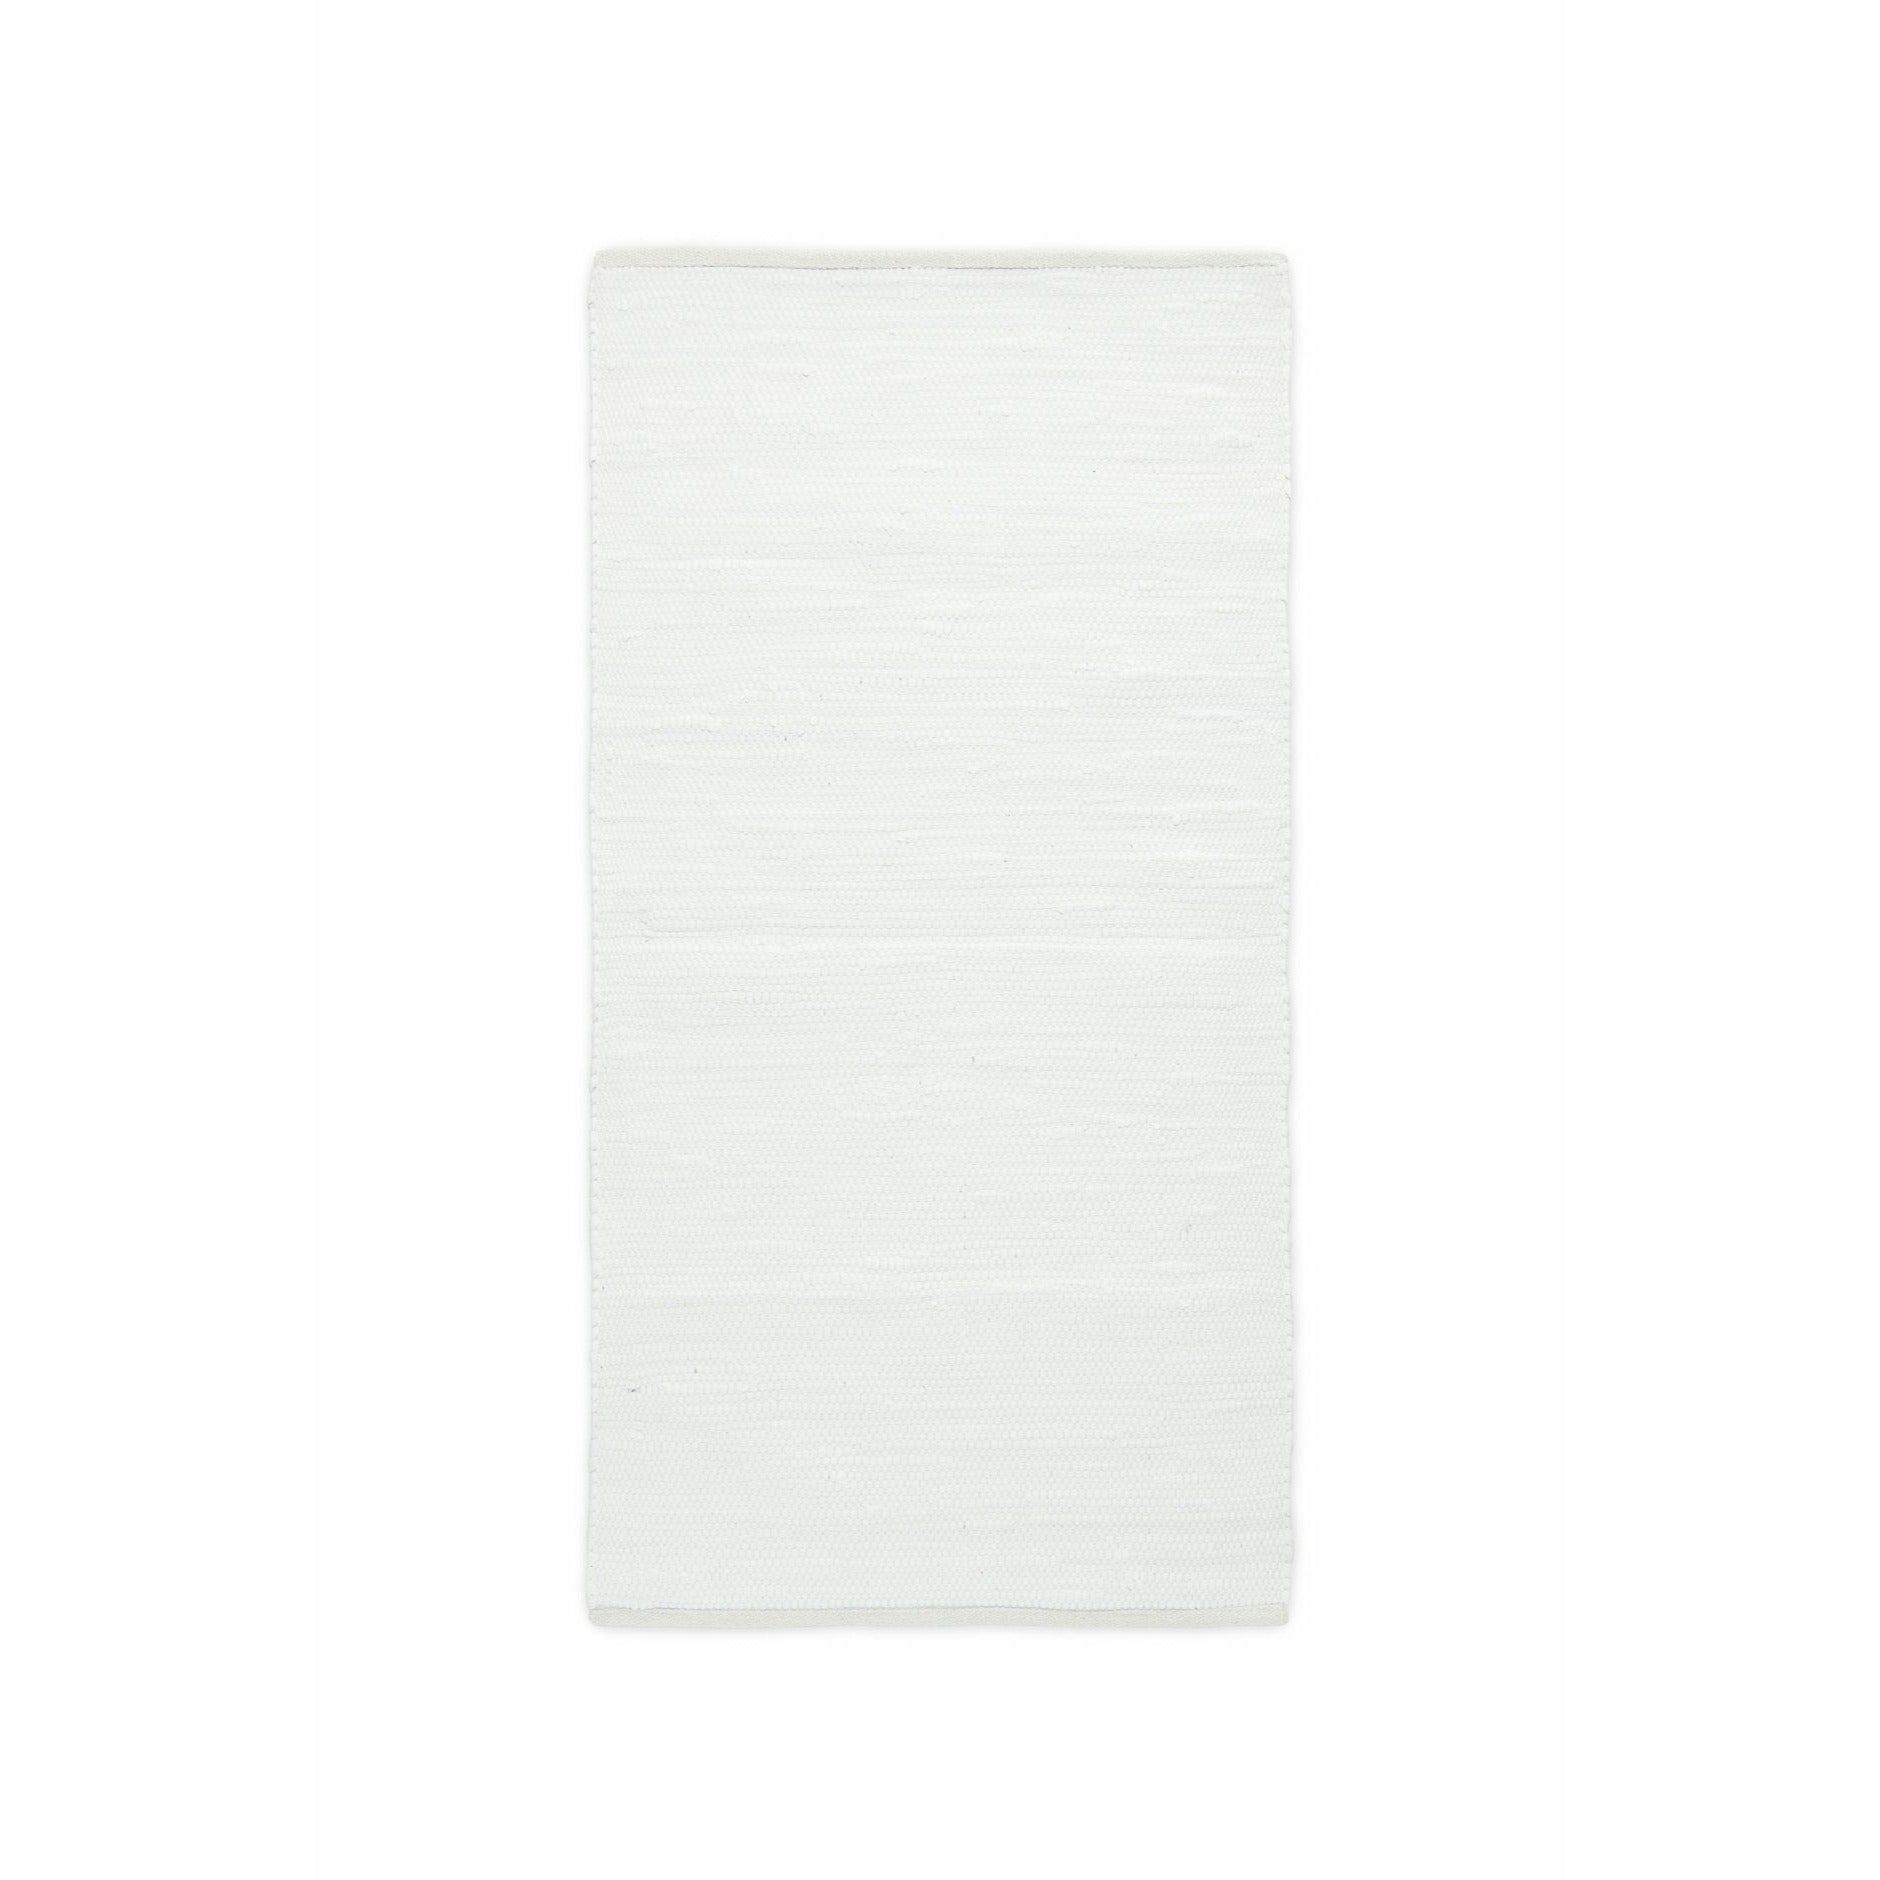 Rug Solid Bomuldstæppe hvid, 170 x 240 cm